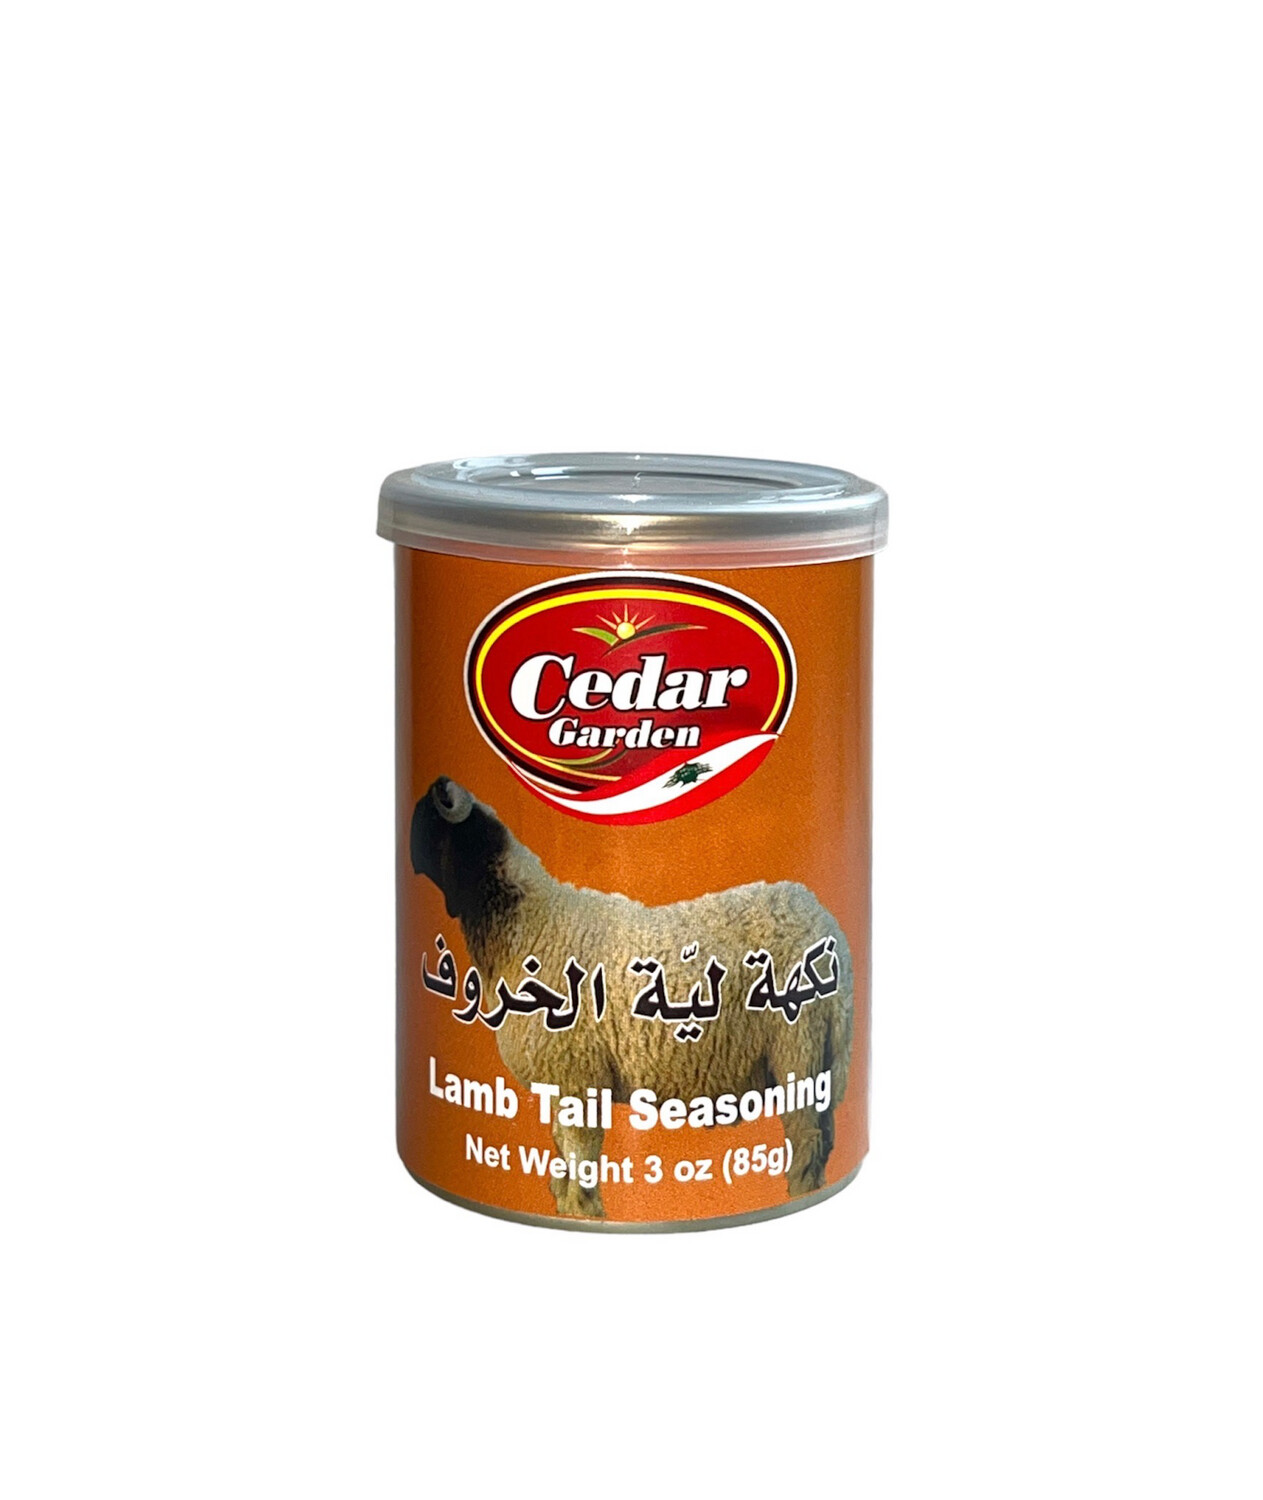 Cedar Garden Lamb Seasoning 24x85g